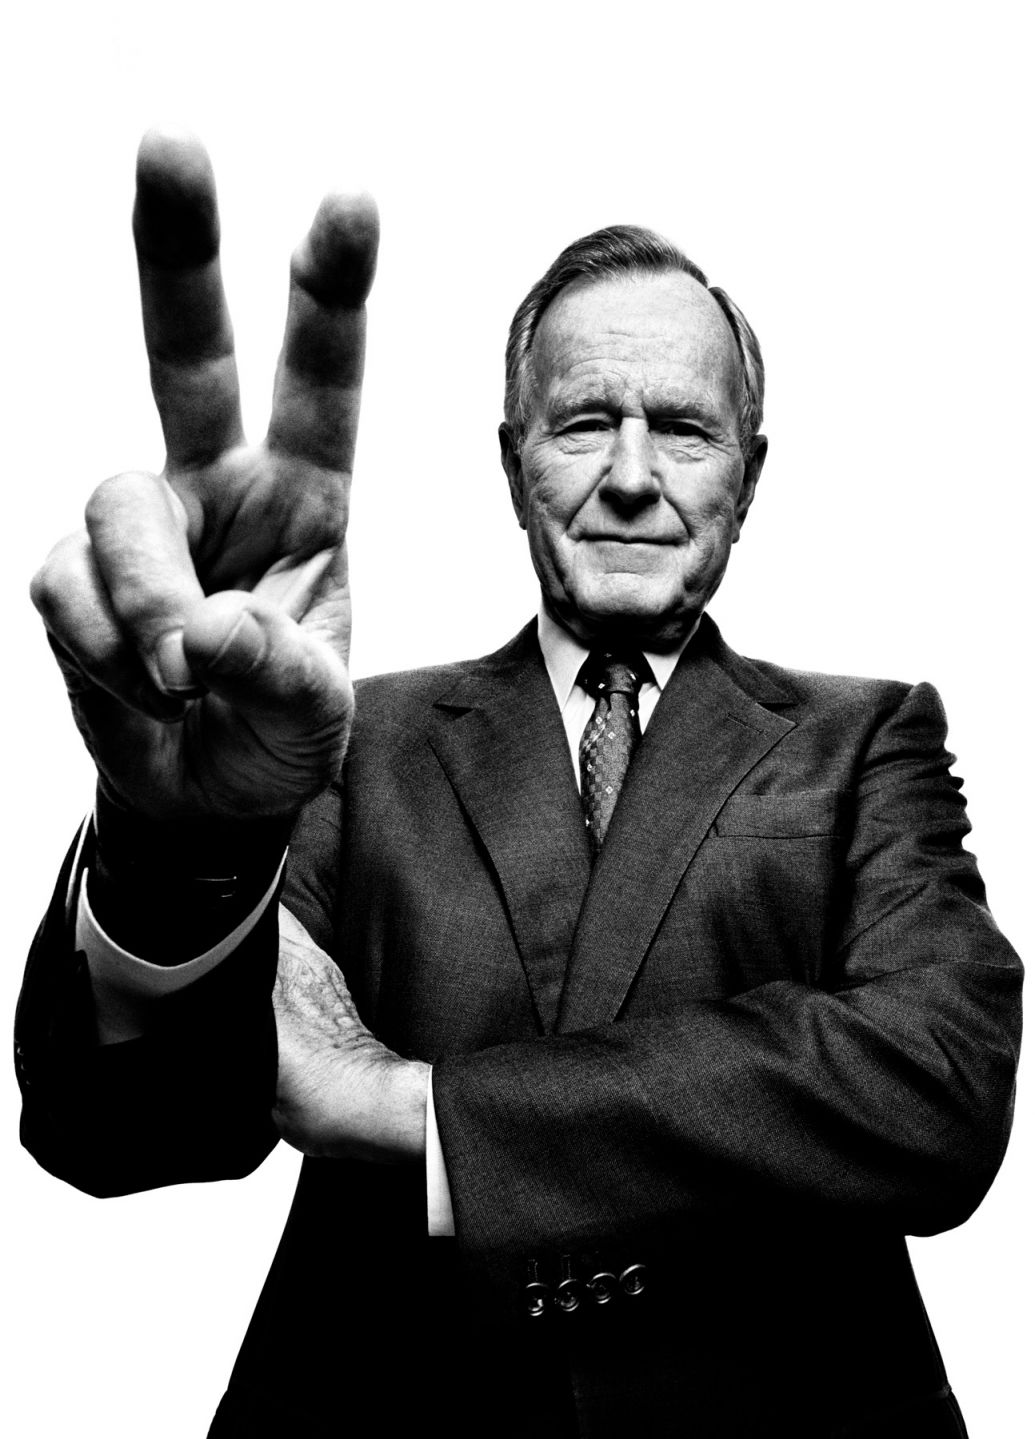 George H.W. Bush portrait photography